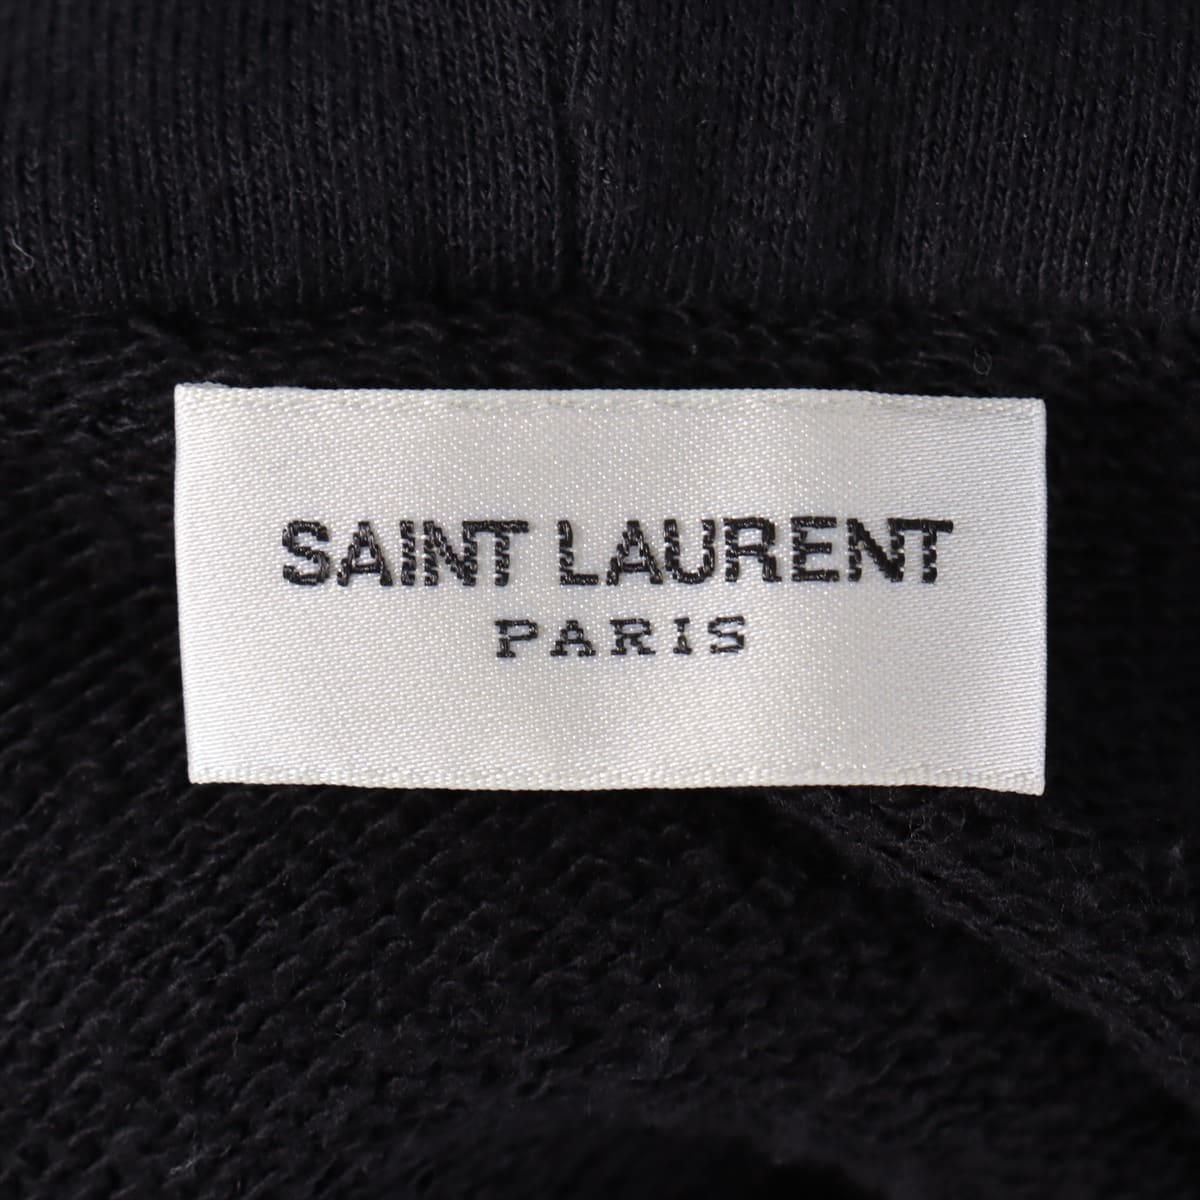 Saint Laurent Paris 17 years Cotton Parker M Men's Black